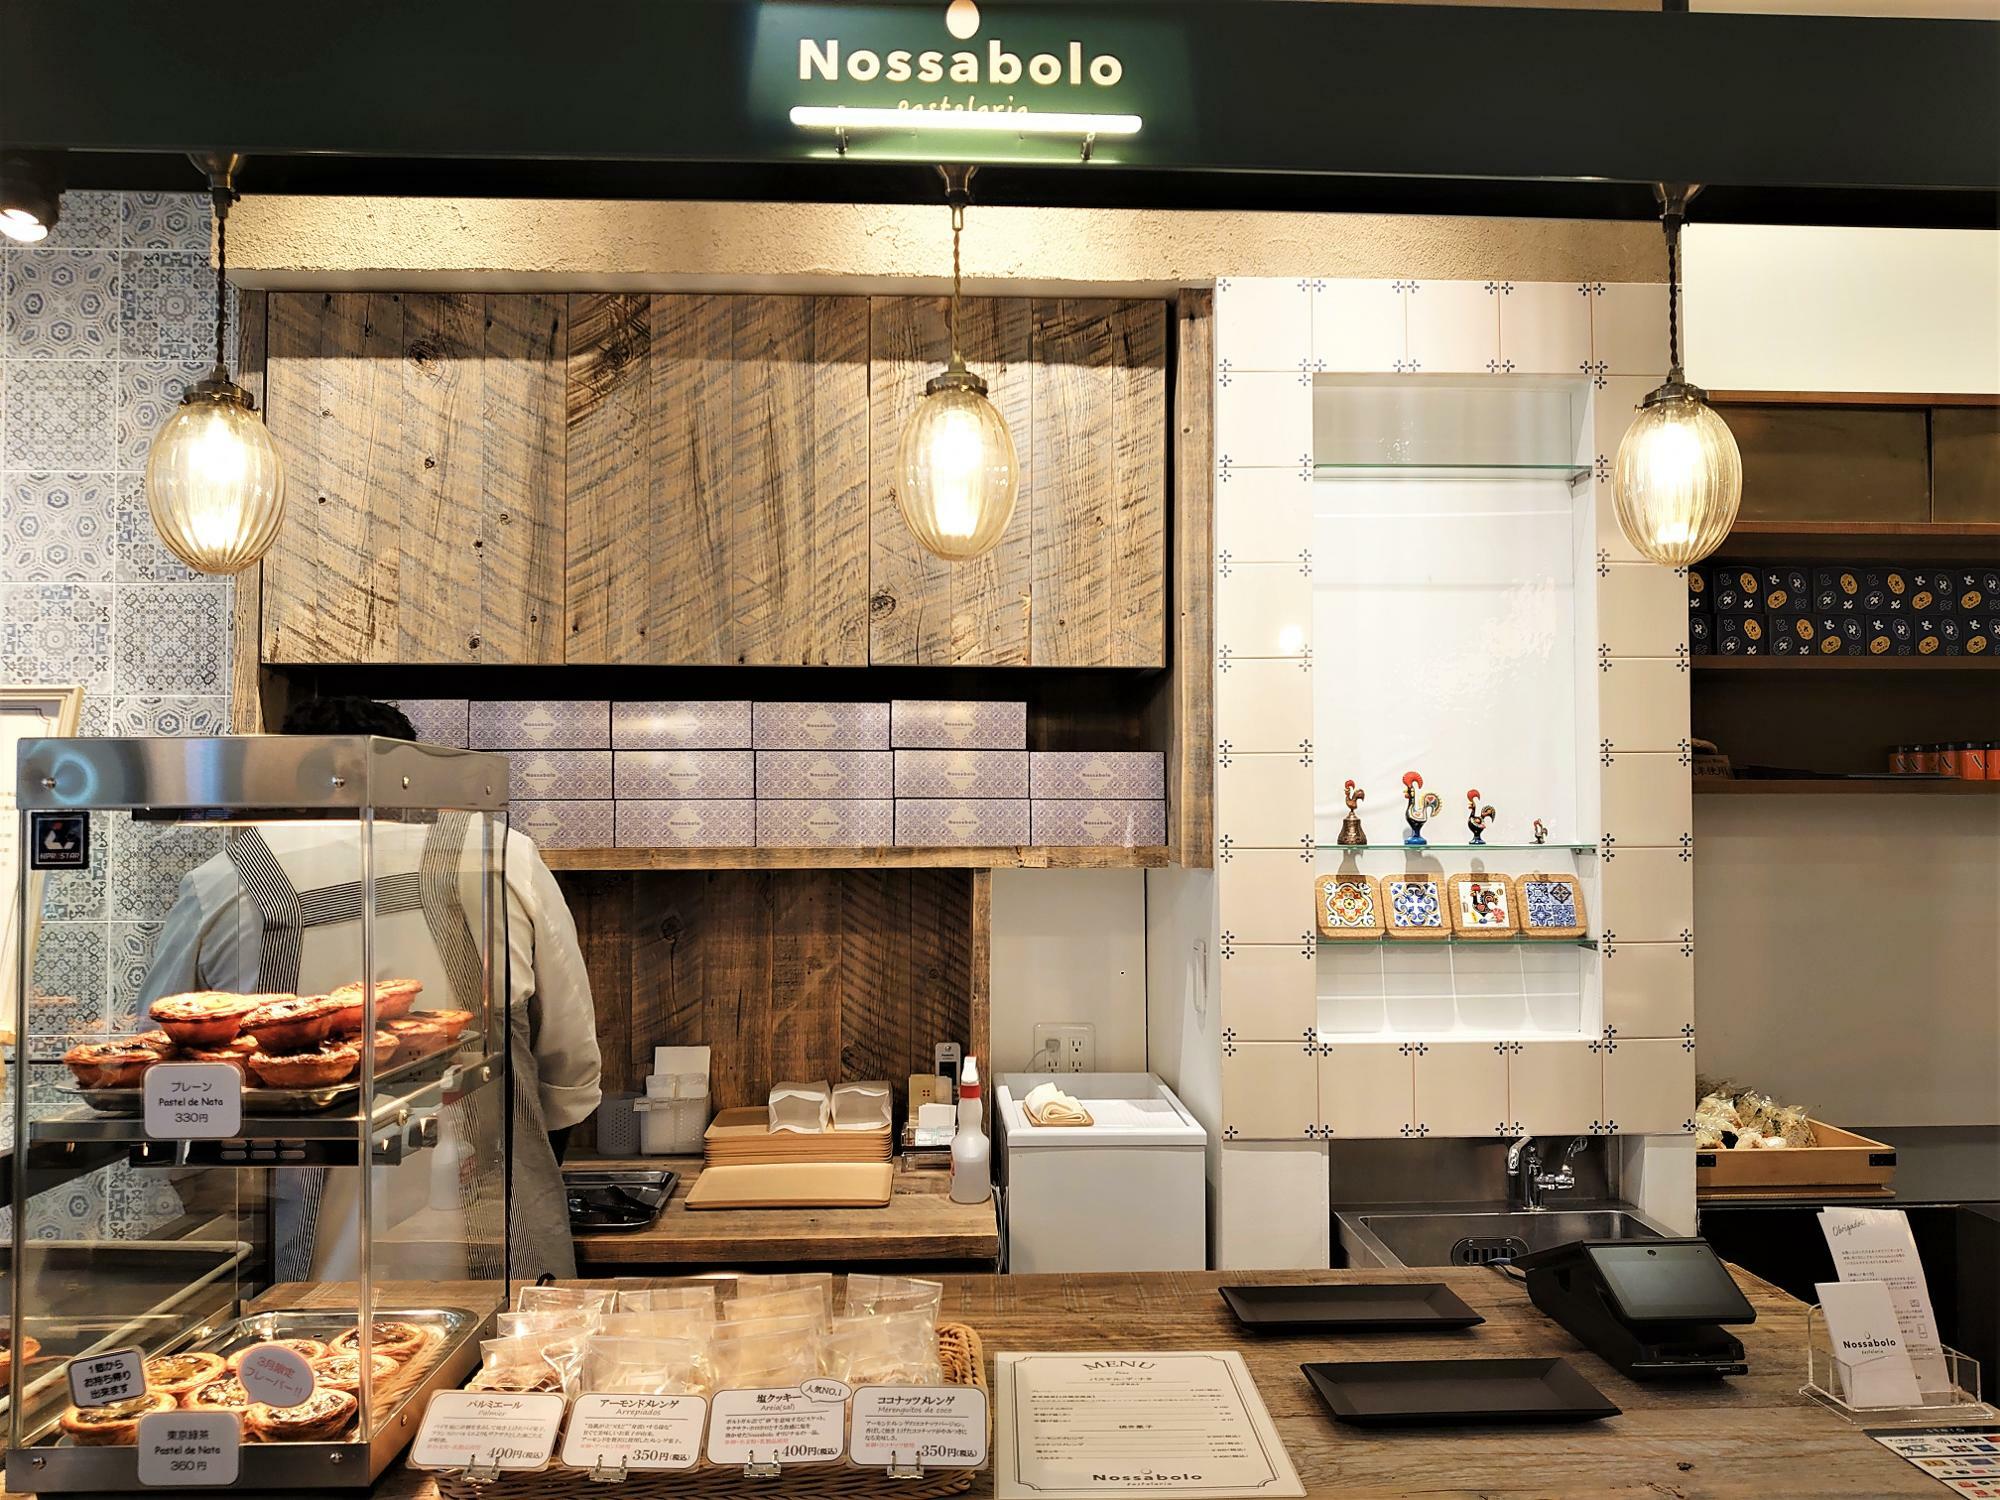 「Nossabolo」。エッグタルトの他にポルトガル菓子も販売